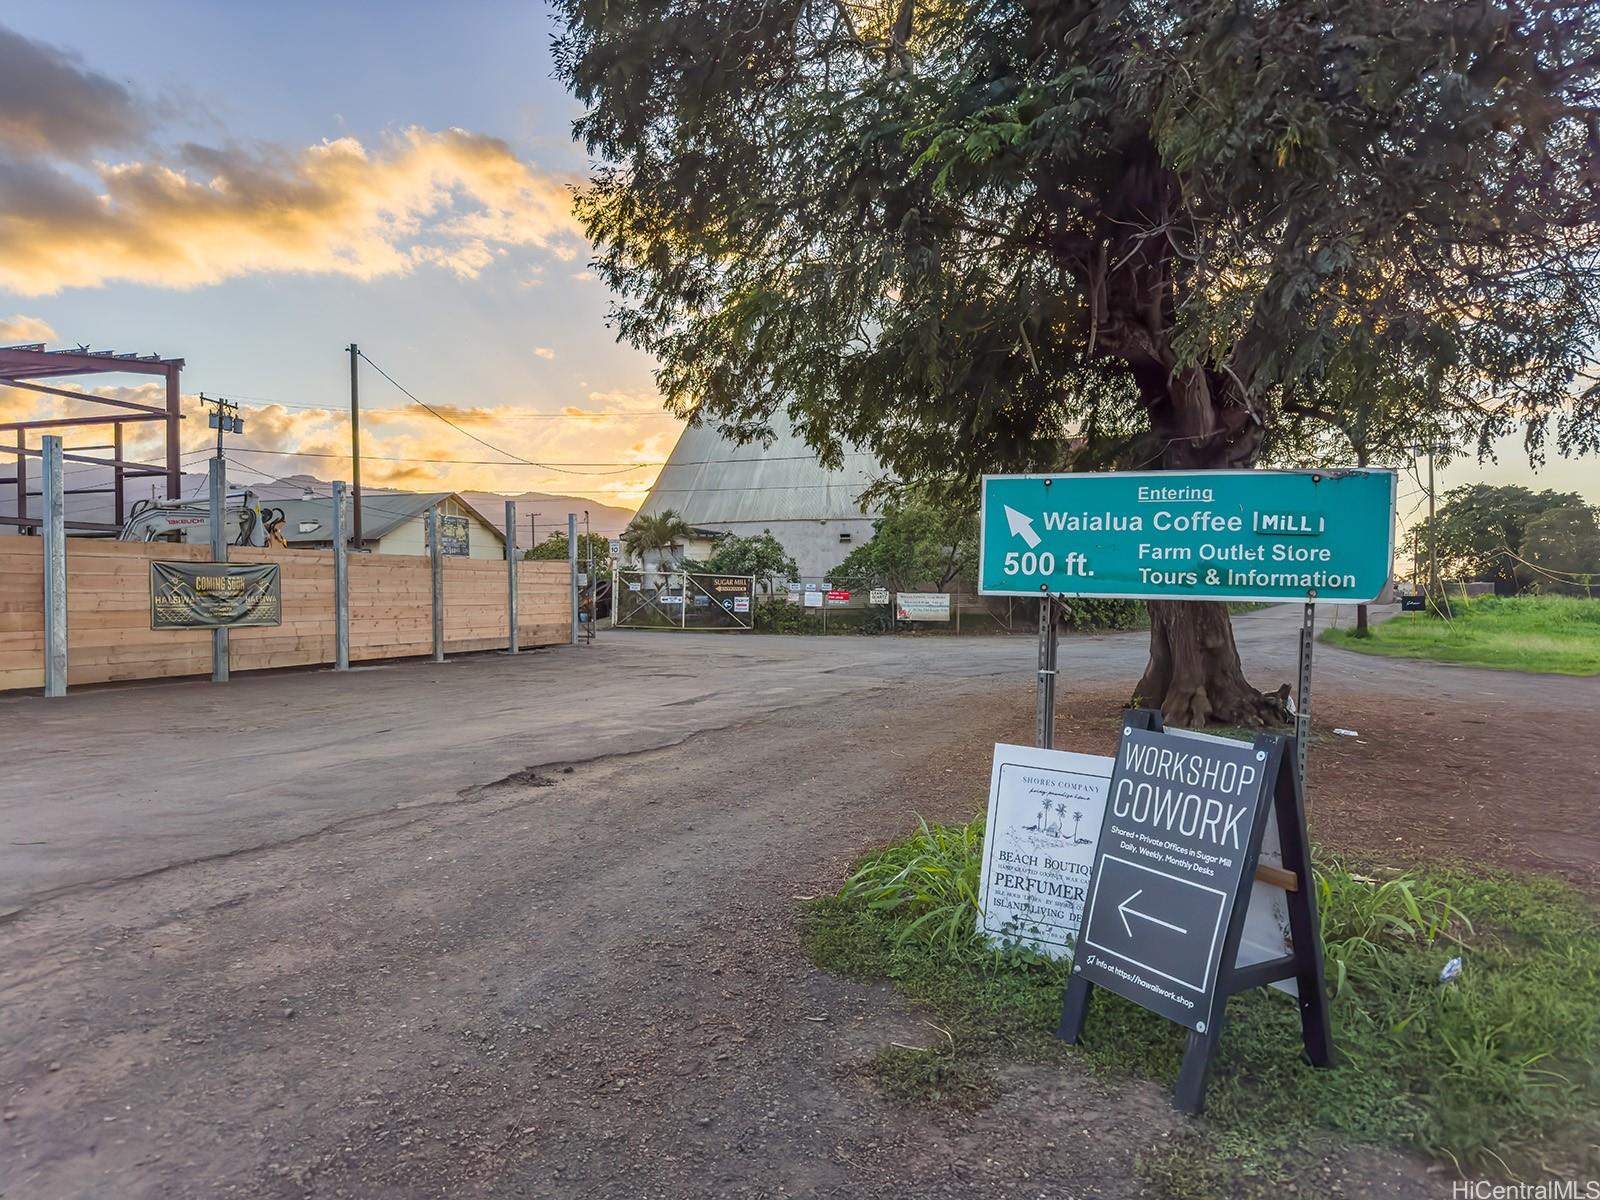 61-1121 Kaukonahua Road 3 Waialua, Hi vacant land for sale - photo 17 of 25